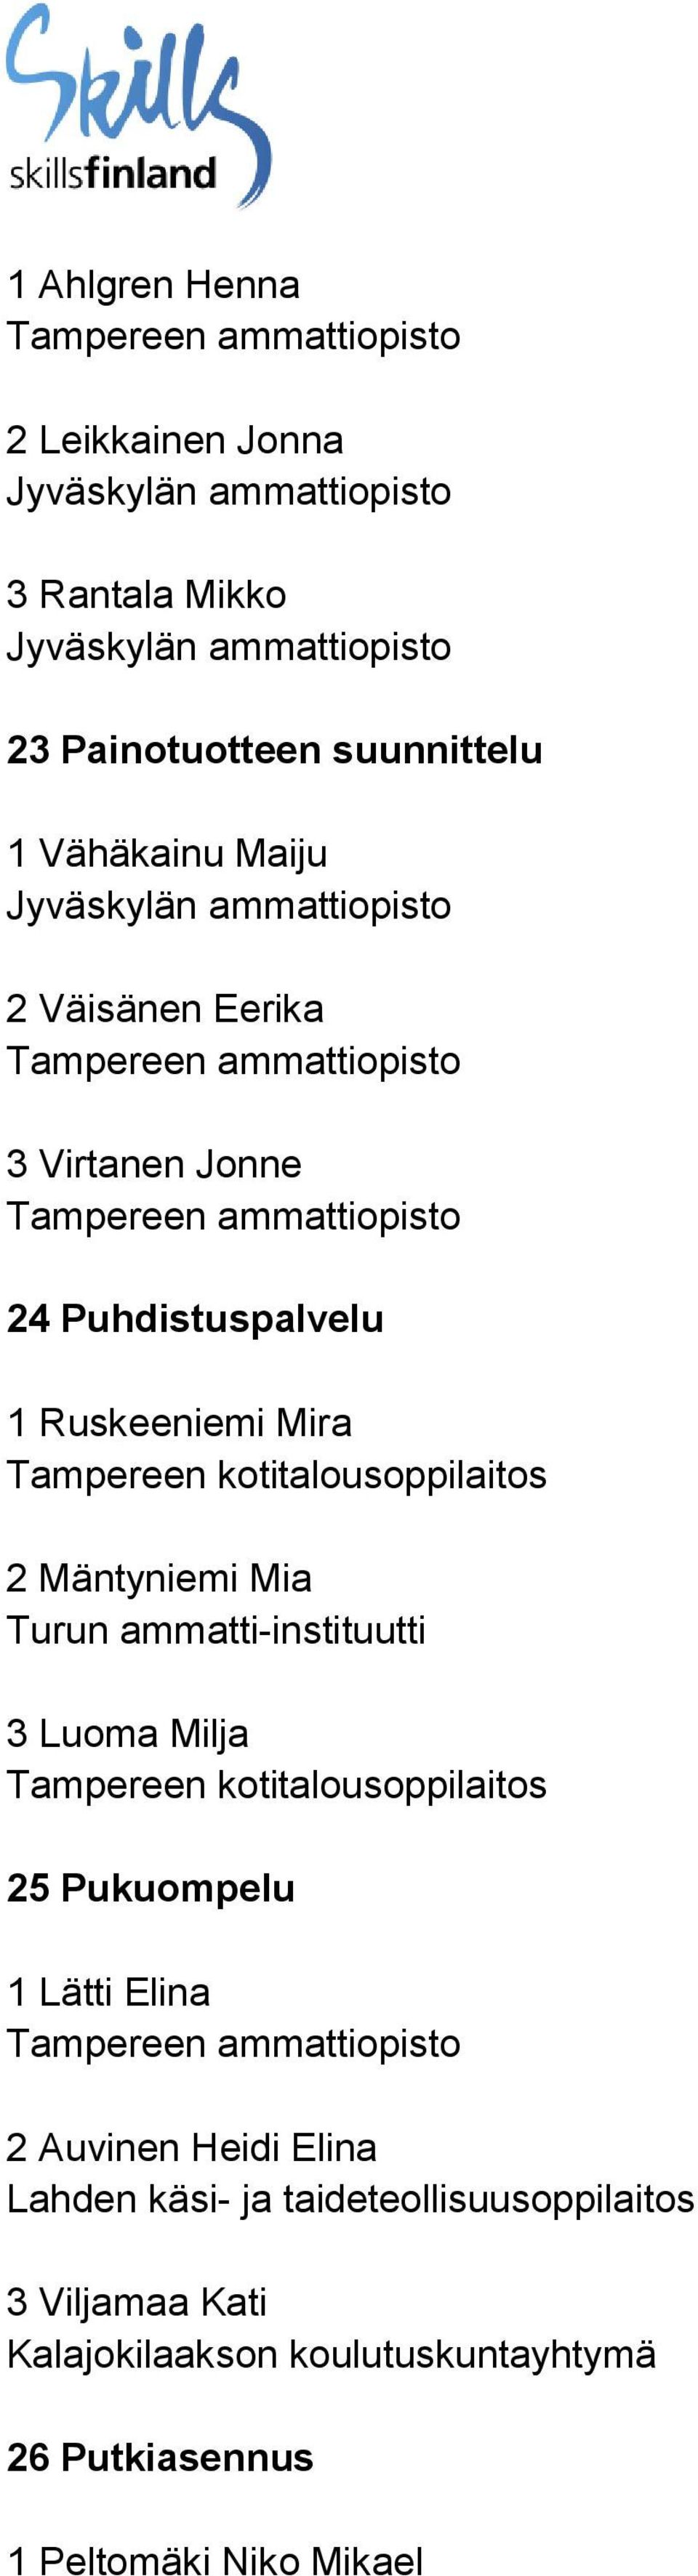 3 Luoma Milja Tampereen kotitalousoppilaitos 25 Pukuompelu 1 Lätti Elina 2 Auvinen Heidi Elina Lahden käsi- ja